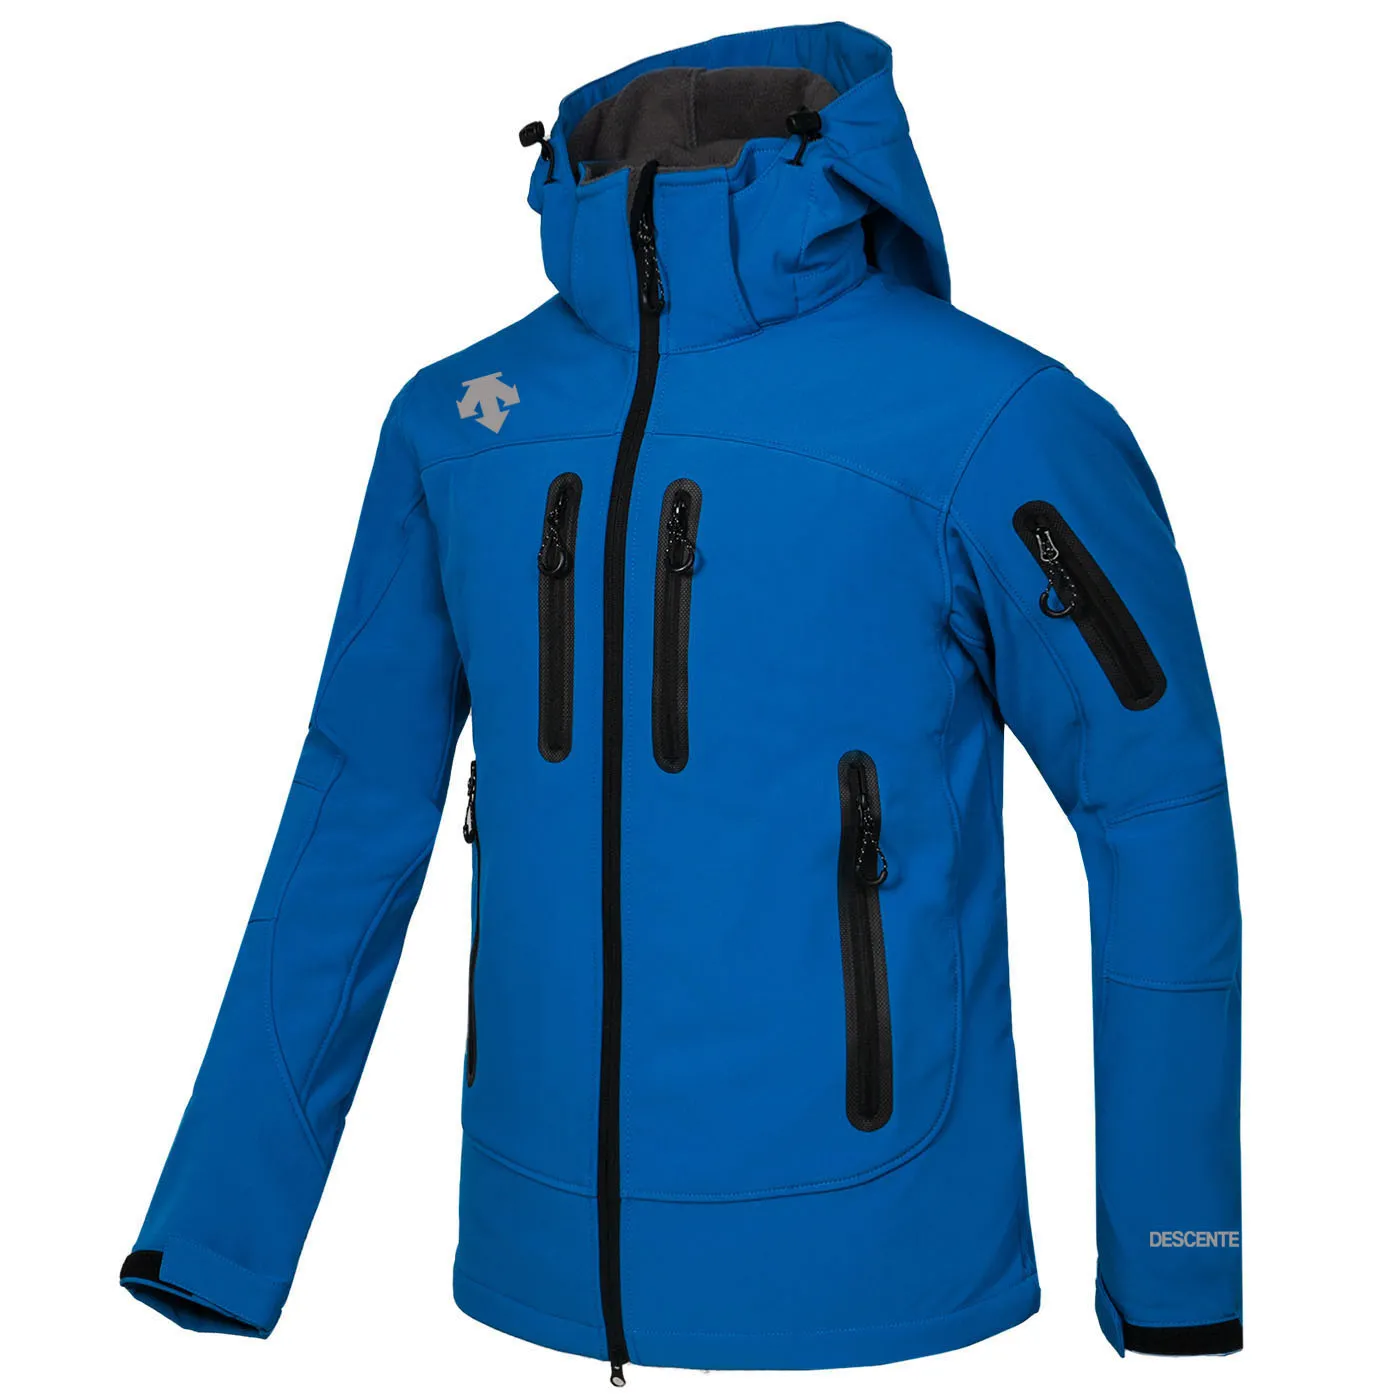 Erkekler DECENTE Softshell ceket yüz ceket Erkekler Açık Hava Spor Mont erkekler Kayak Yürüyüş Rüzgar Geçirmez Kış Dış Giyim Yumuşak Kabuk ceket blue1837